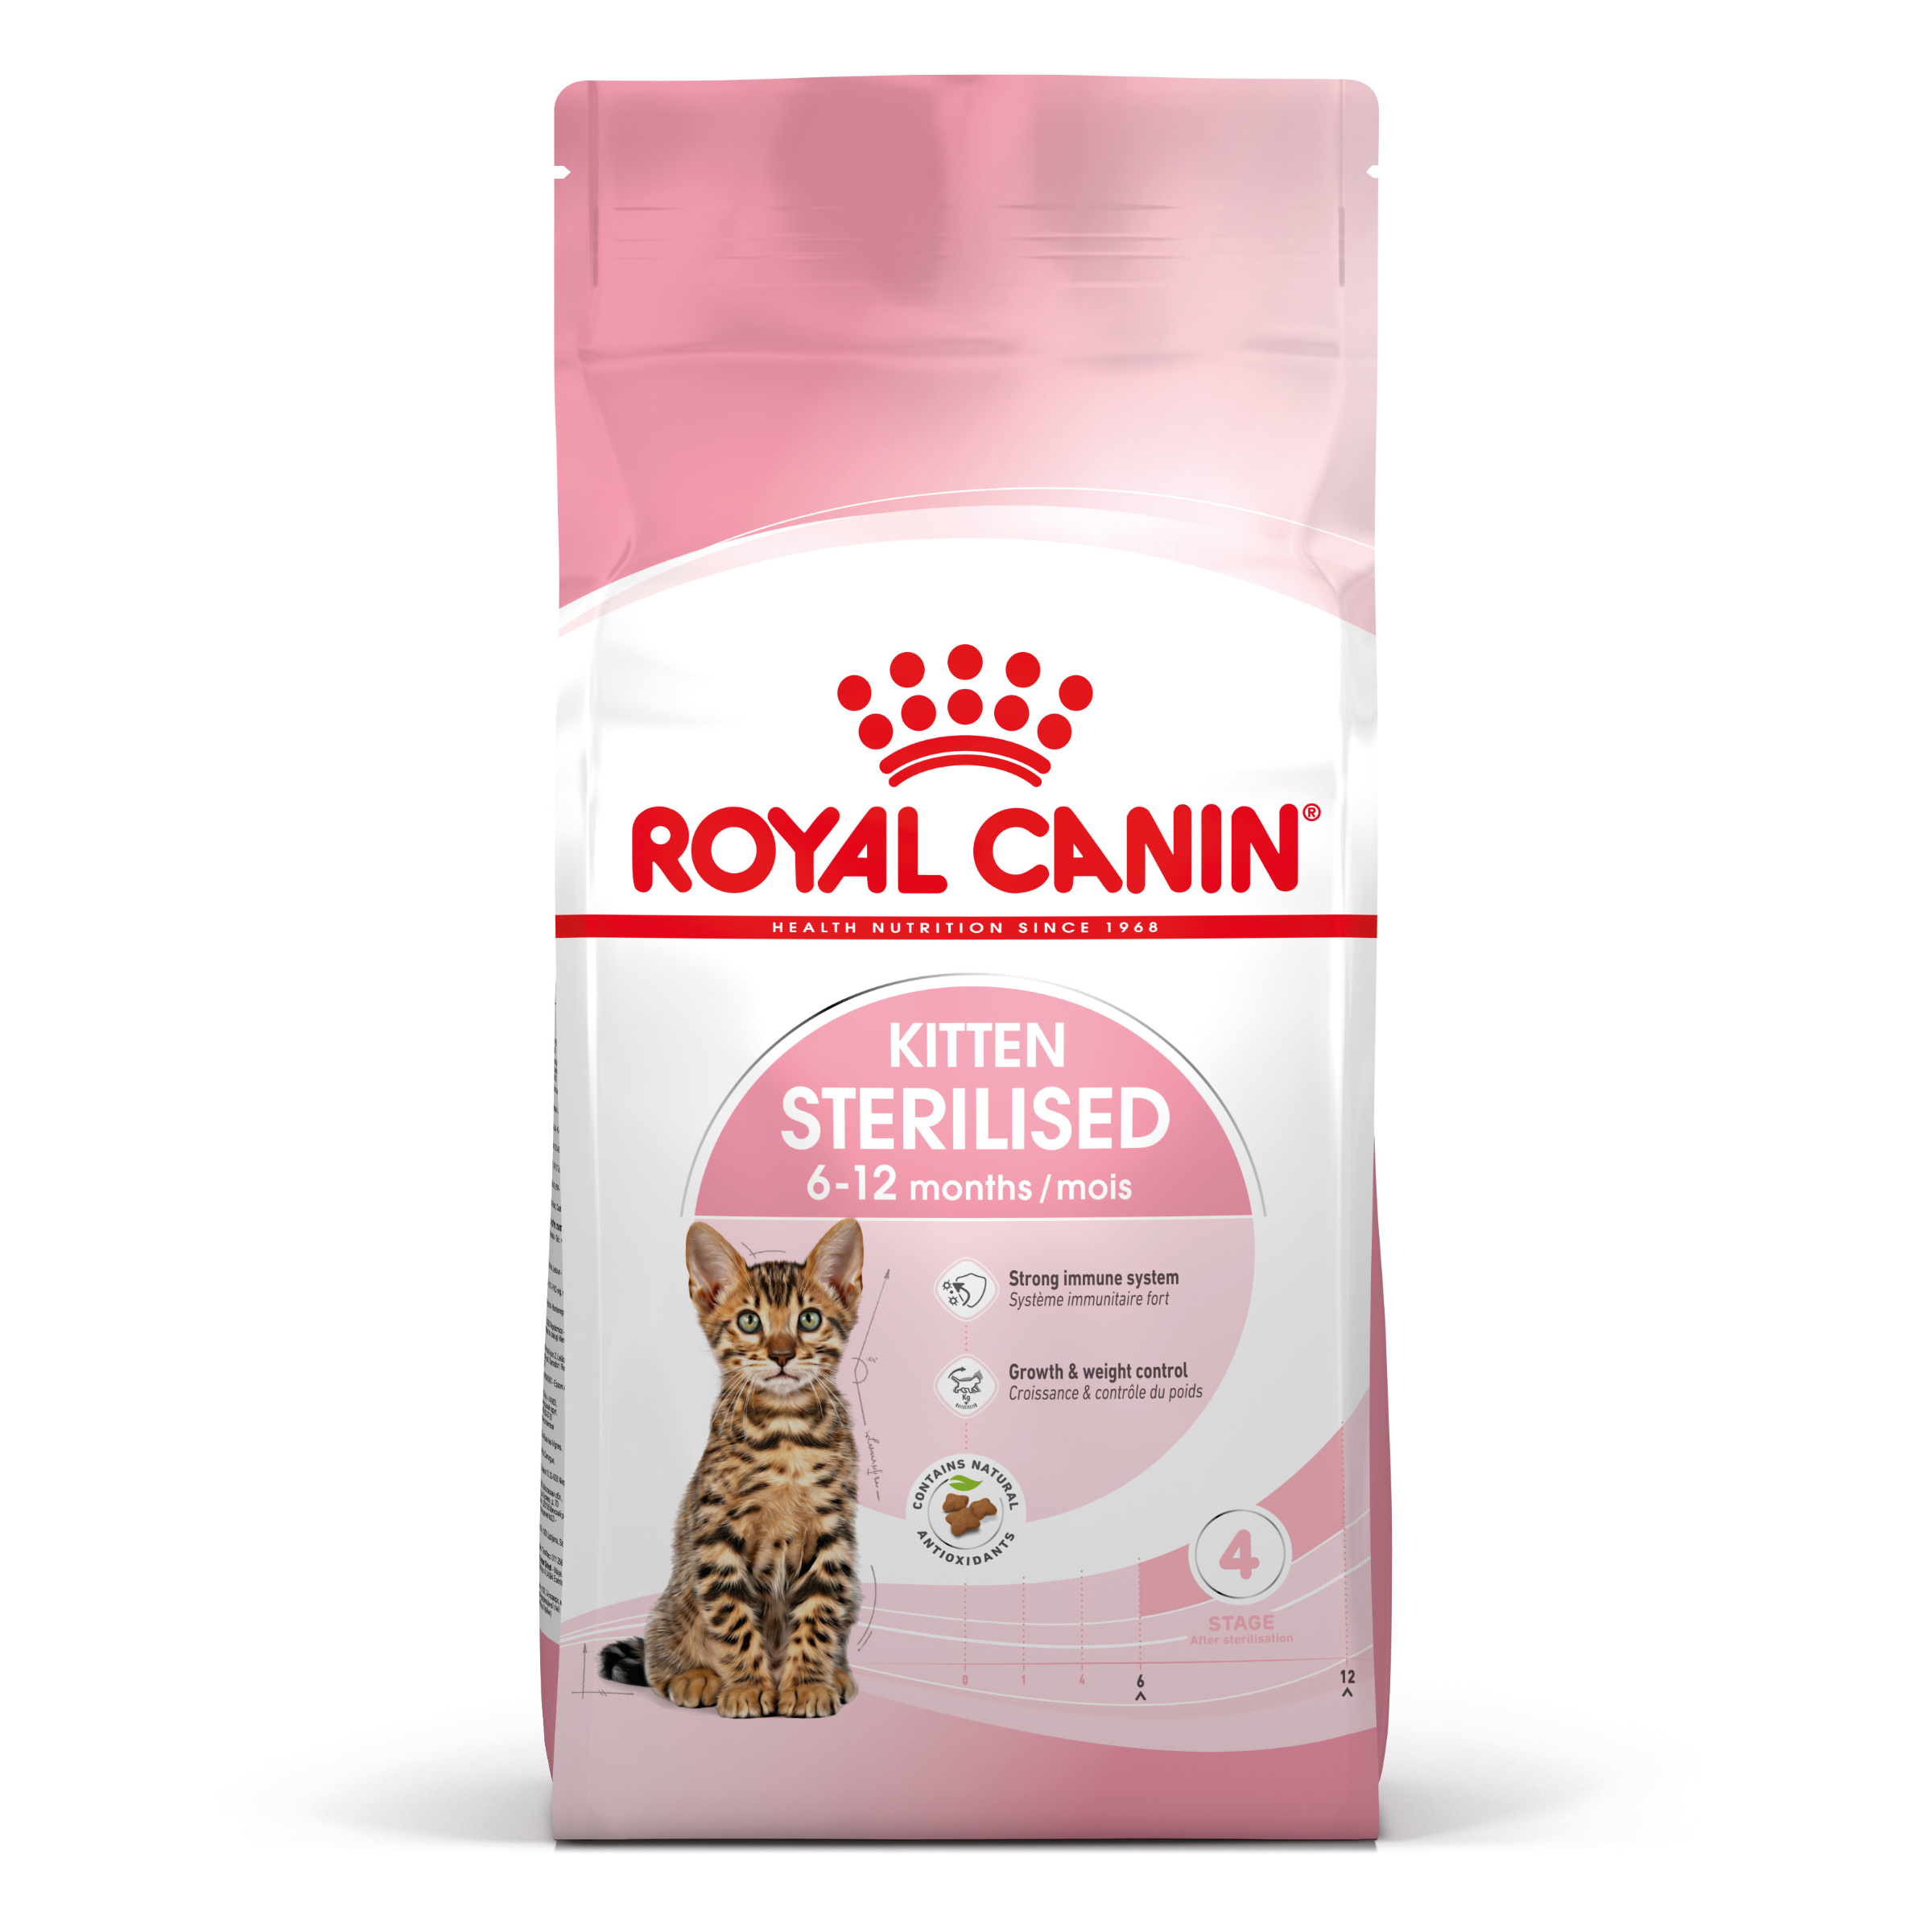 Royal Canin Kitten Sterilised - Aliment pour chats - Spécial chatons. stérilisés (de 6 à 12 mois) - 2kg